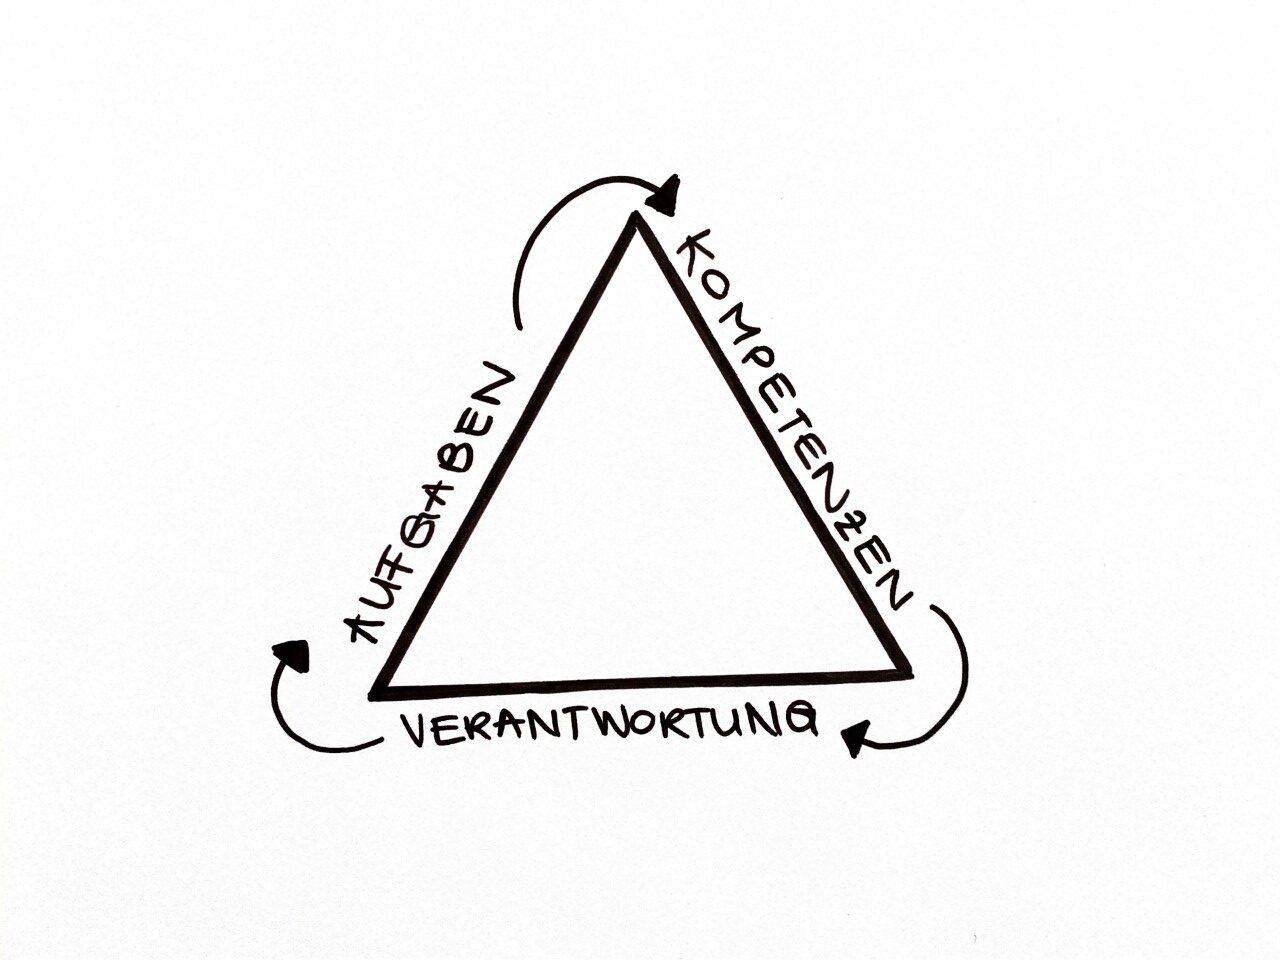 Skizziertes Dreieck mit den Worten Aufgaben, Kompetenzen, Verantwortung an jeder Seite, als Symbol für das AKV-Prinzip